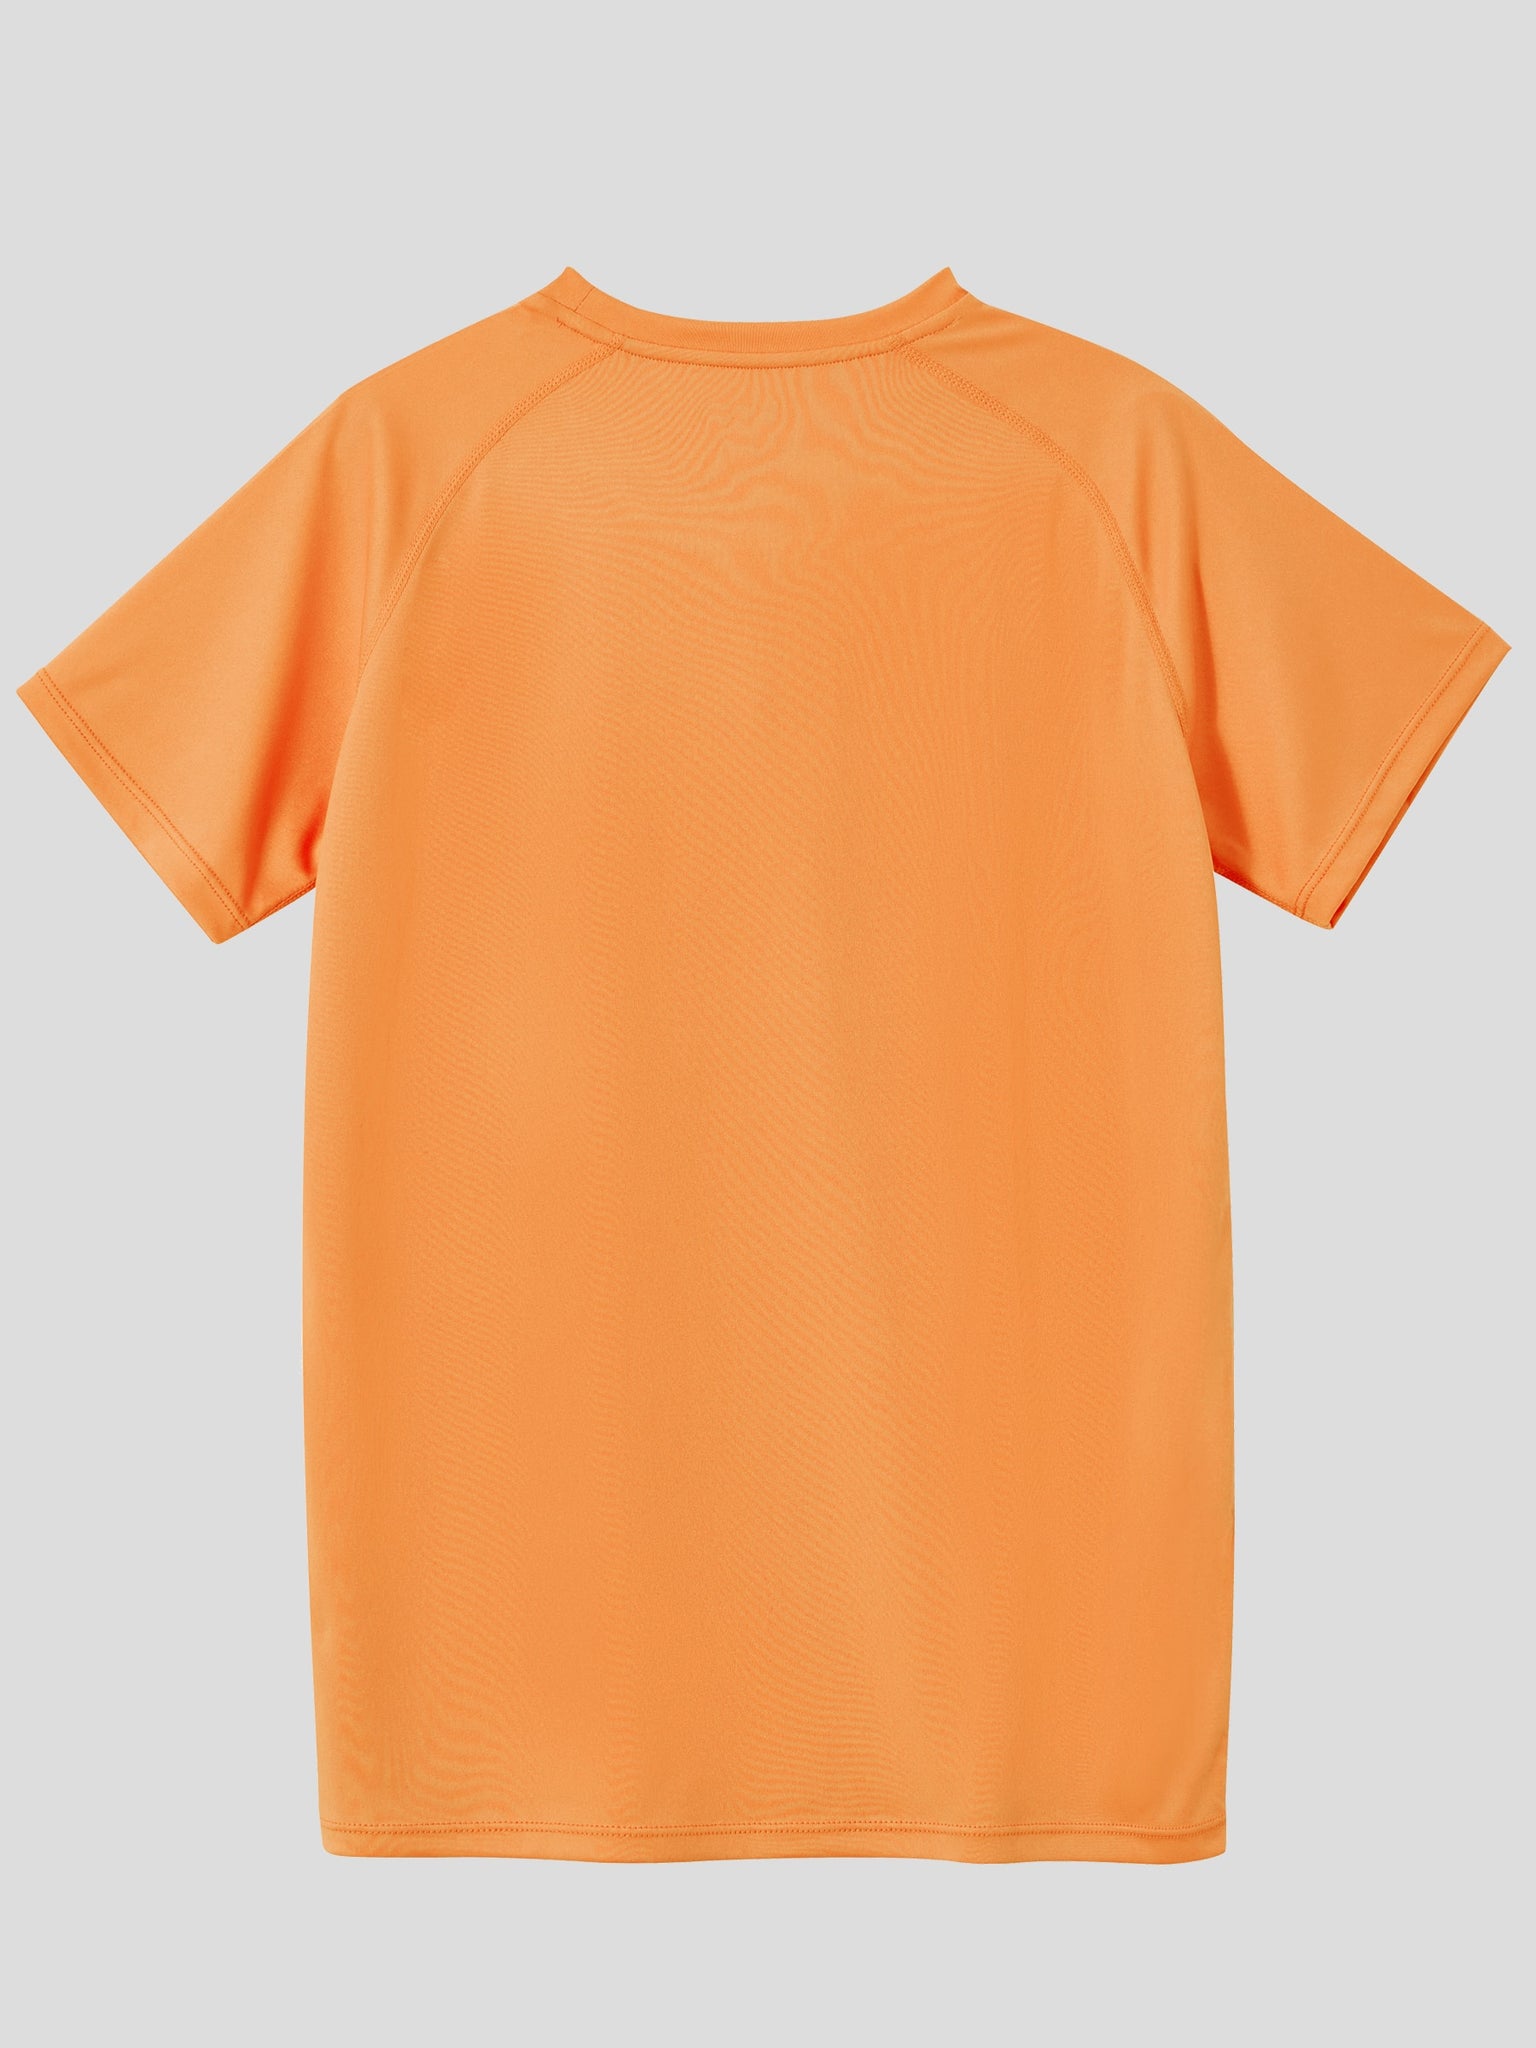 Youth Sun Safe Rash Guard Shirts_Orange_laydown2